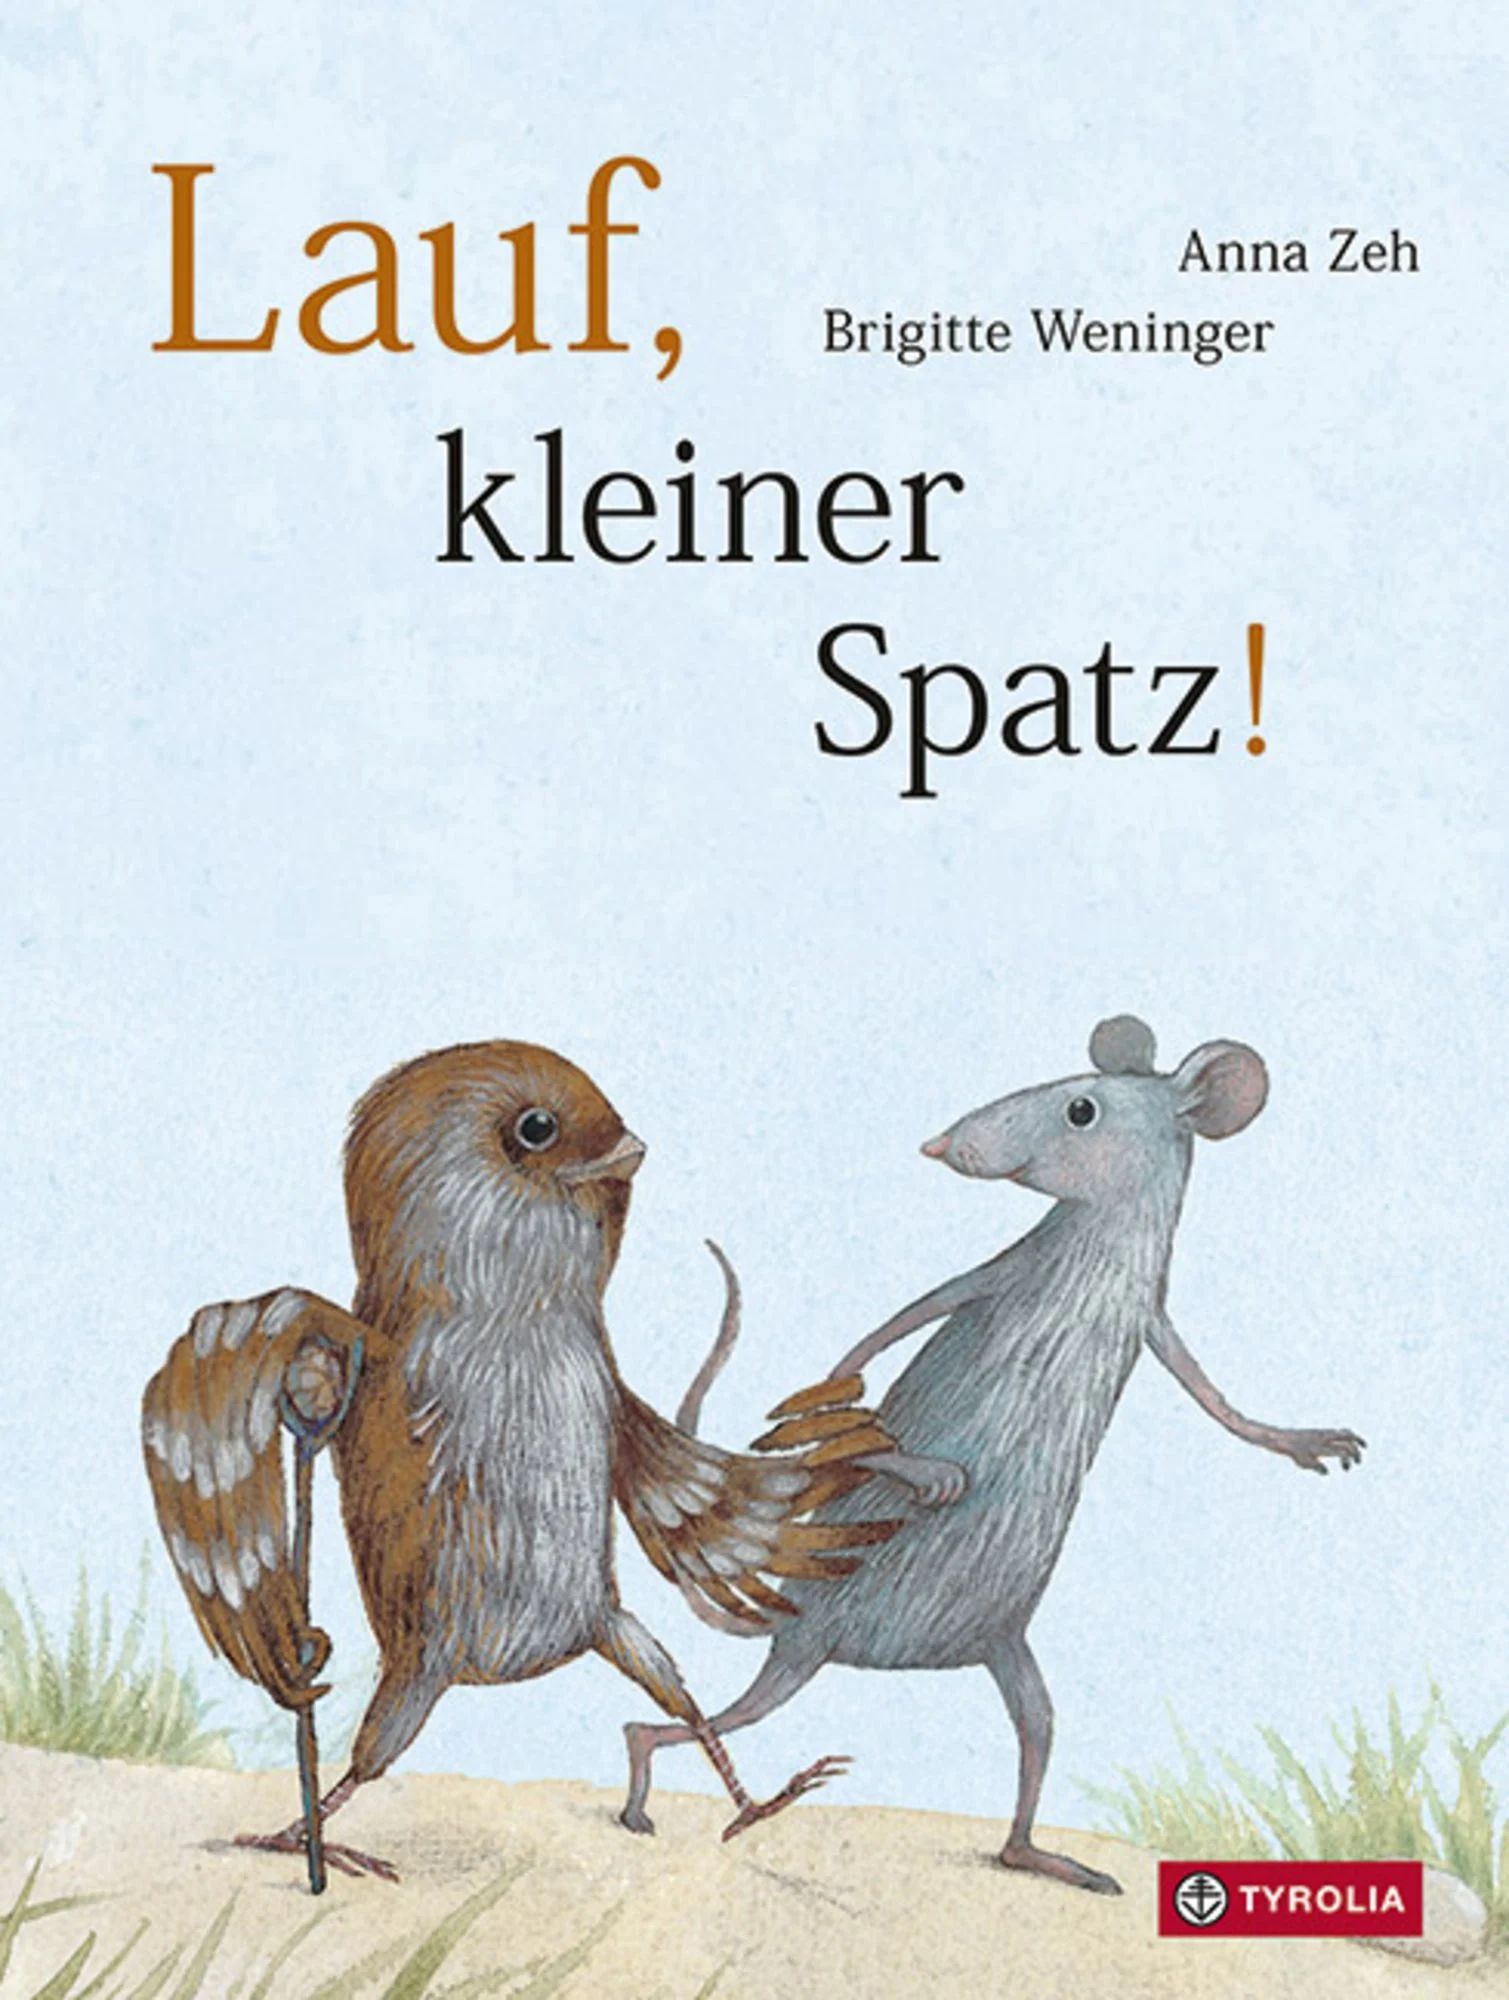 Buchcover "Lauf, kleiner Spatz", Tyrolia 